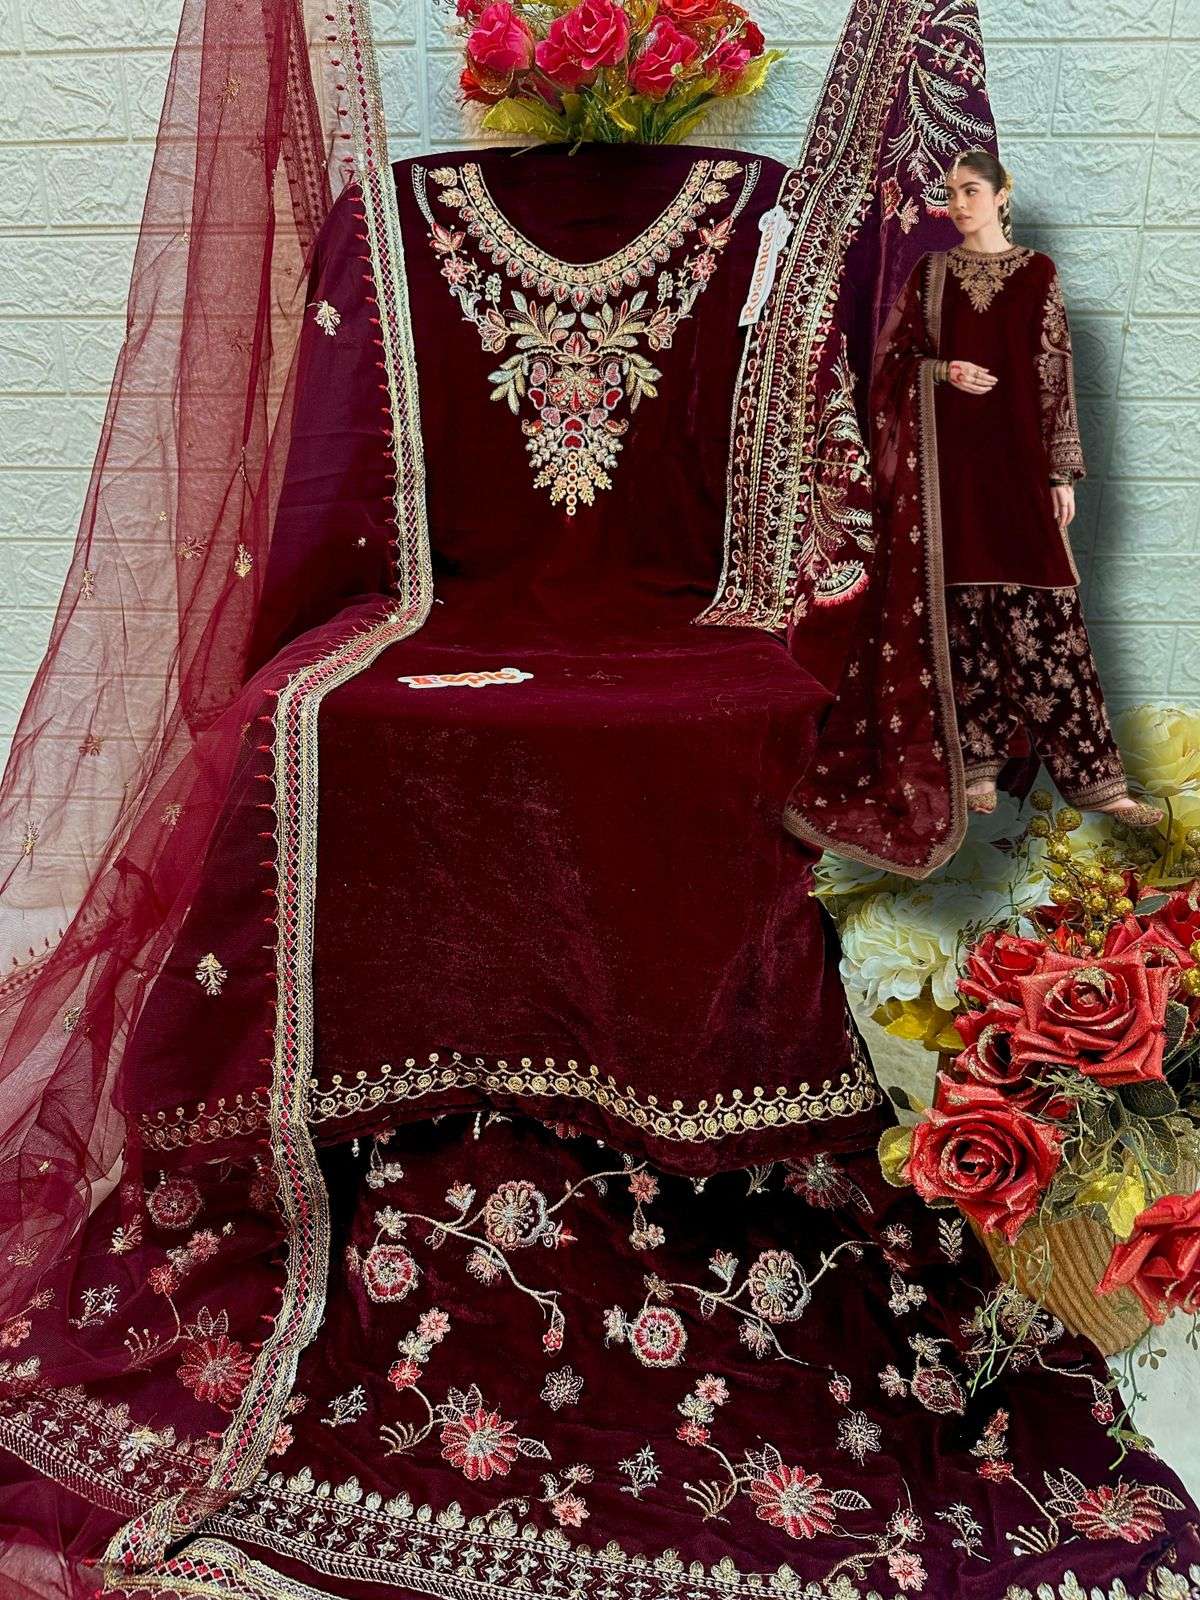 shanaya fashion rose s4 wedding collection -2 designer pakistani salwar kameez wholesaler surat gujarat